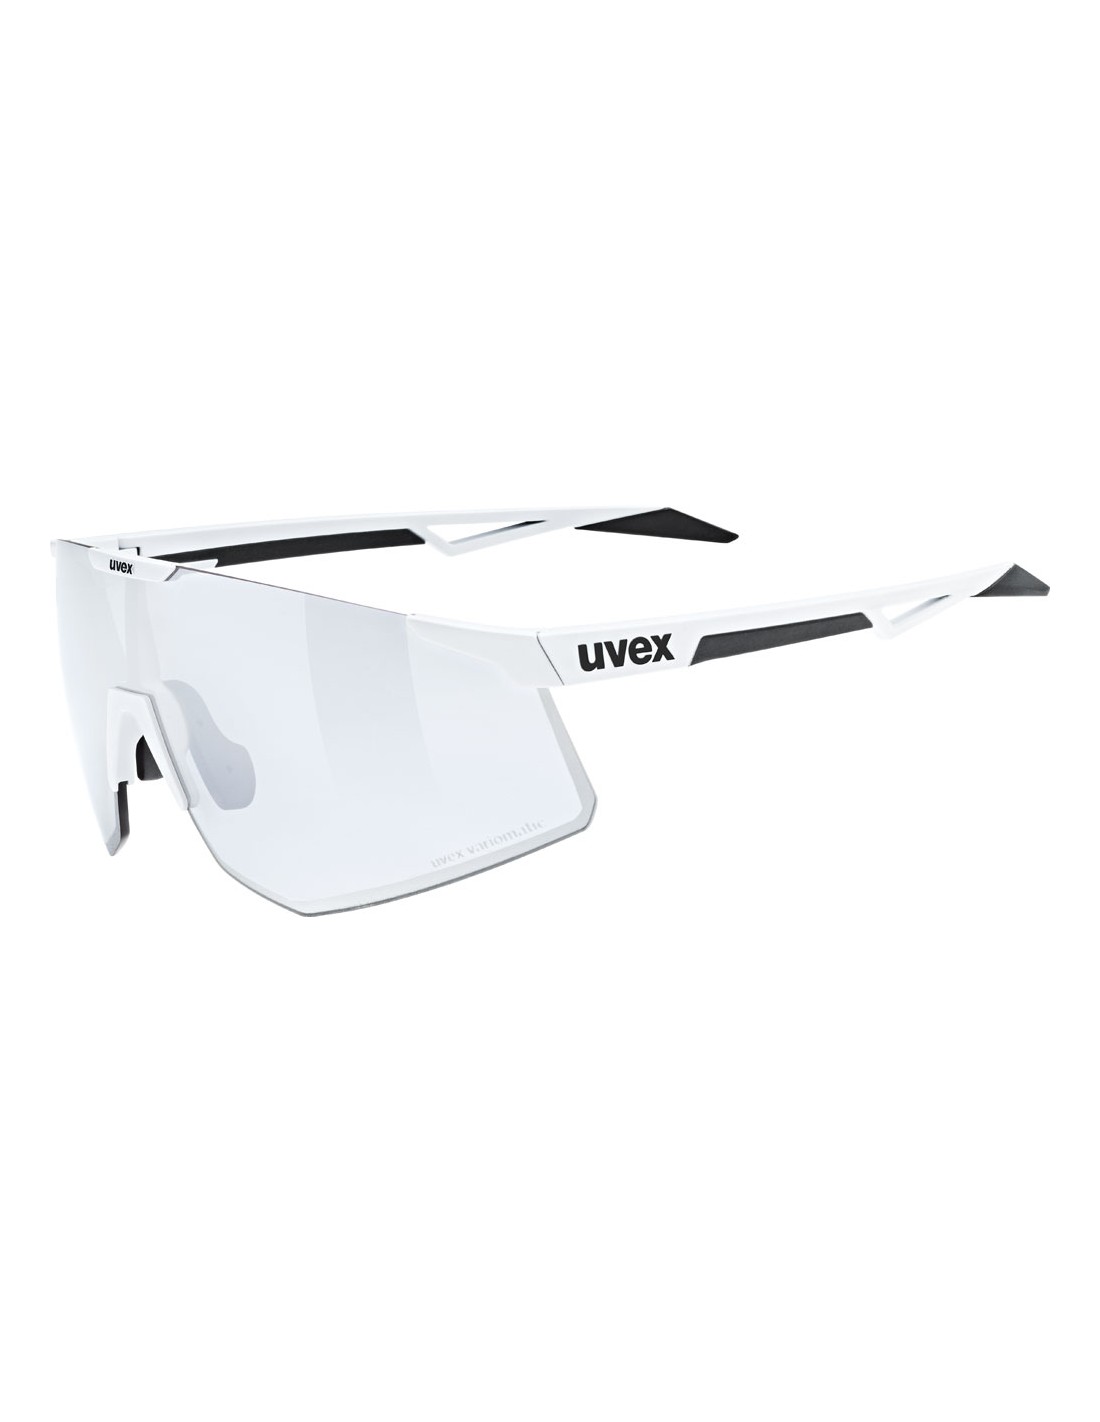 Uvex Sportbrille Pace Perform V, white matt, uvex variomatic ltm. silver Cat. 1-3 von Uvex